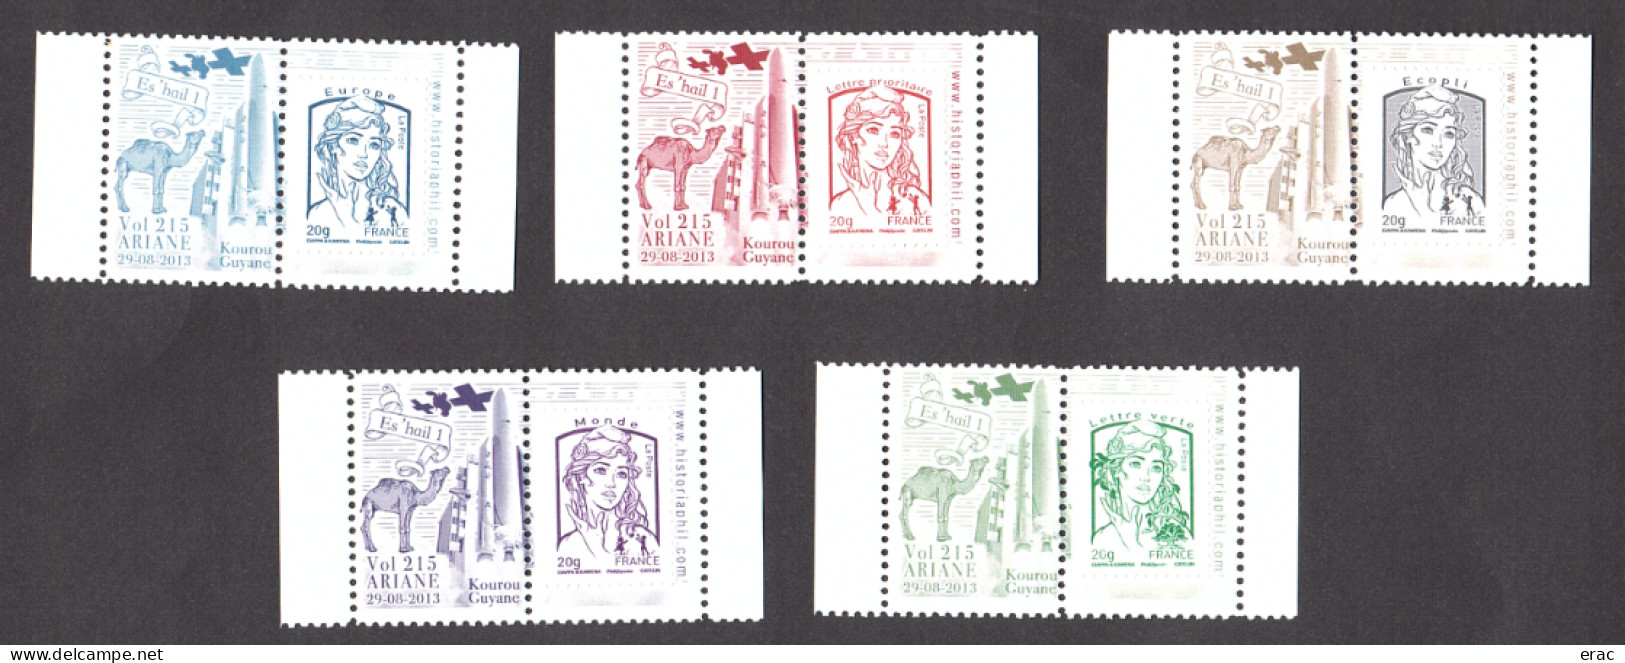 5 Porte-timbres Gommés - 2013 Ariane Vol 215 - Es'hail 1 - Avec TVP Marianne De Ciappa & Kawena Neufs - 2013-2018 Marianne De Ciappa-Kawena